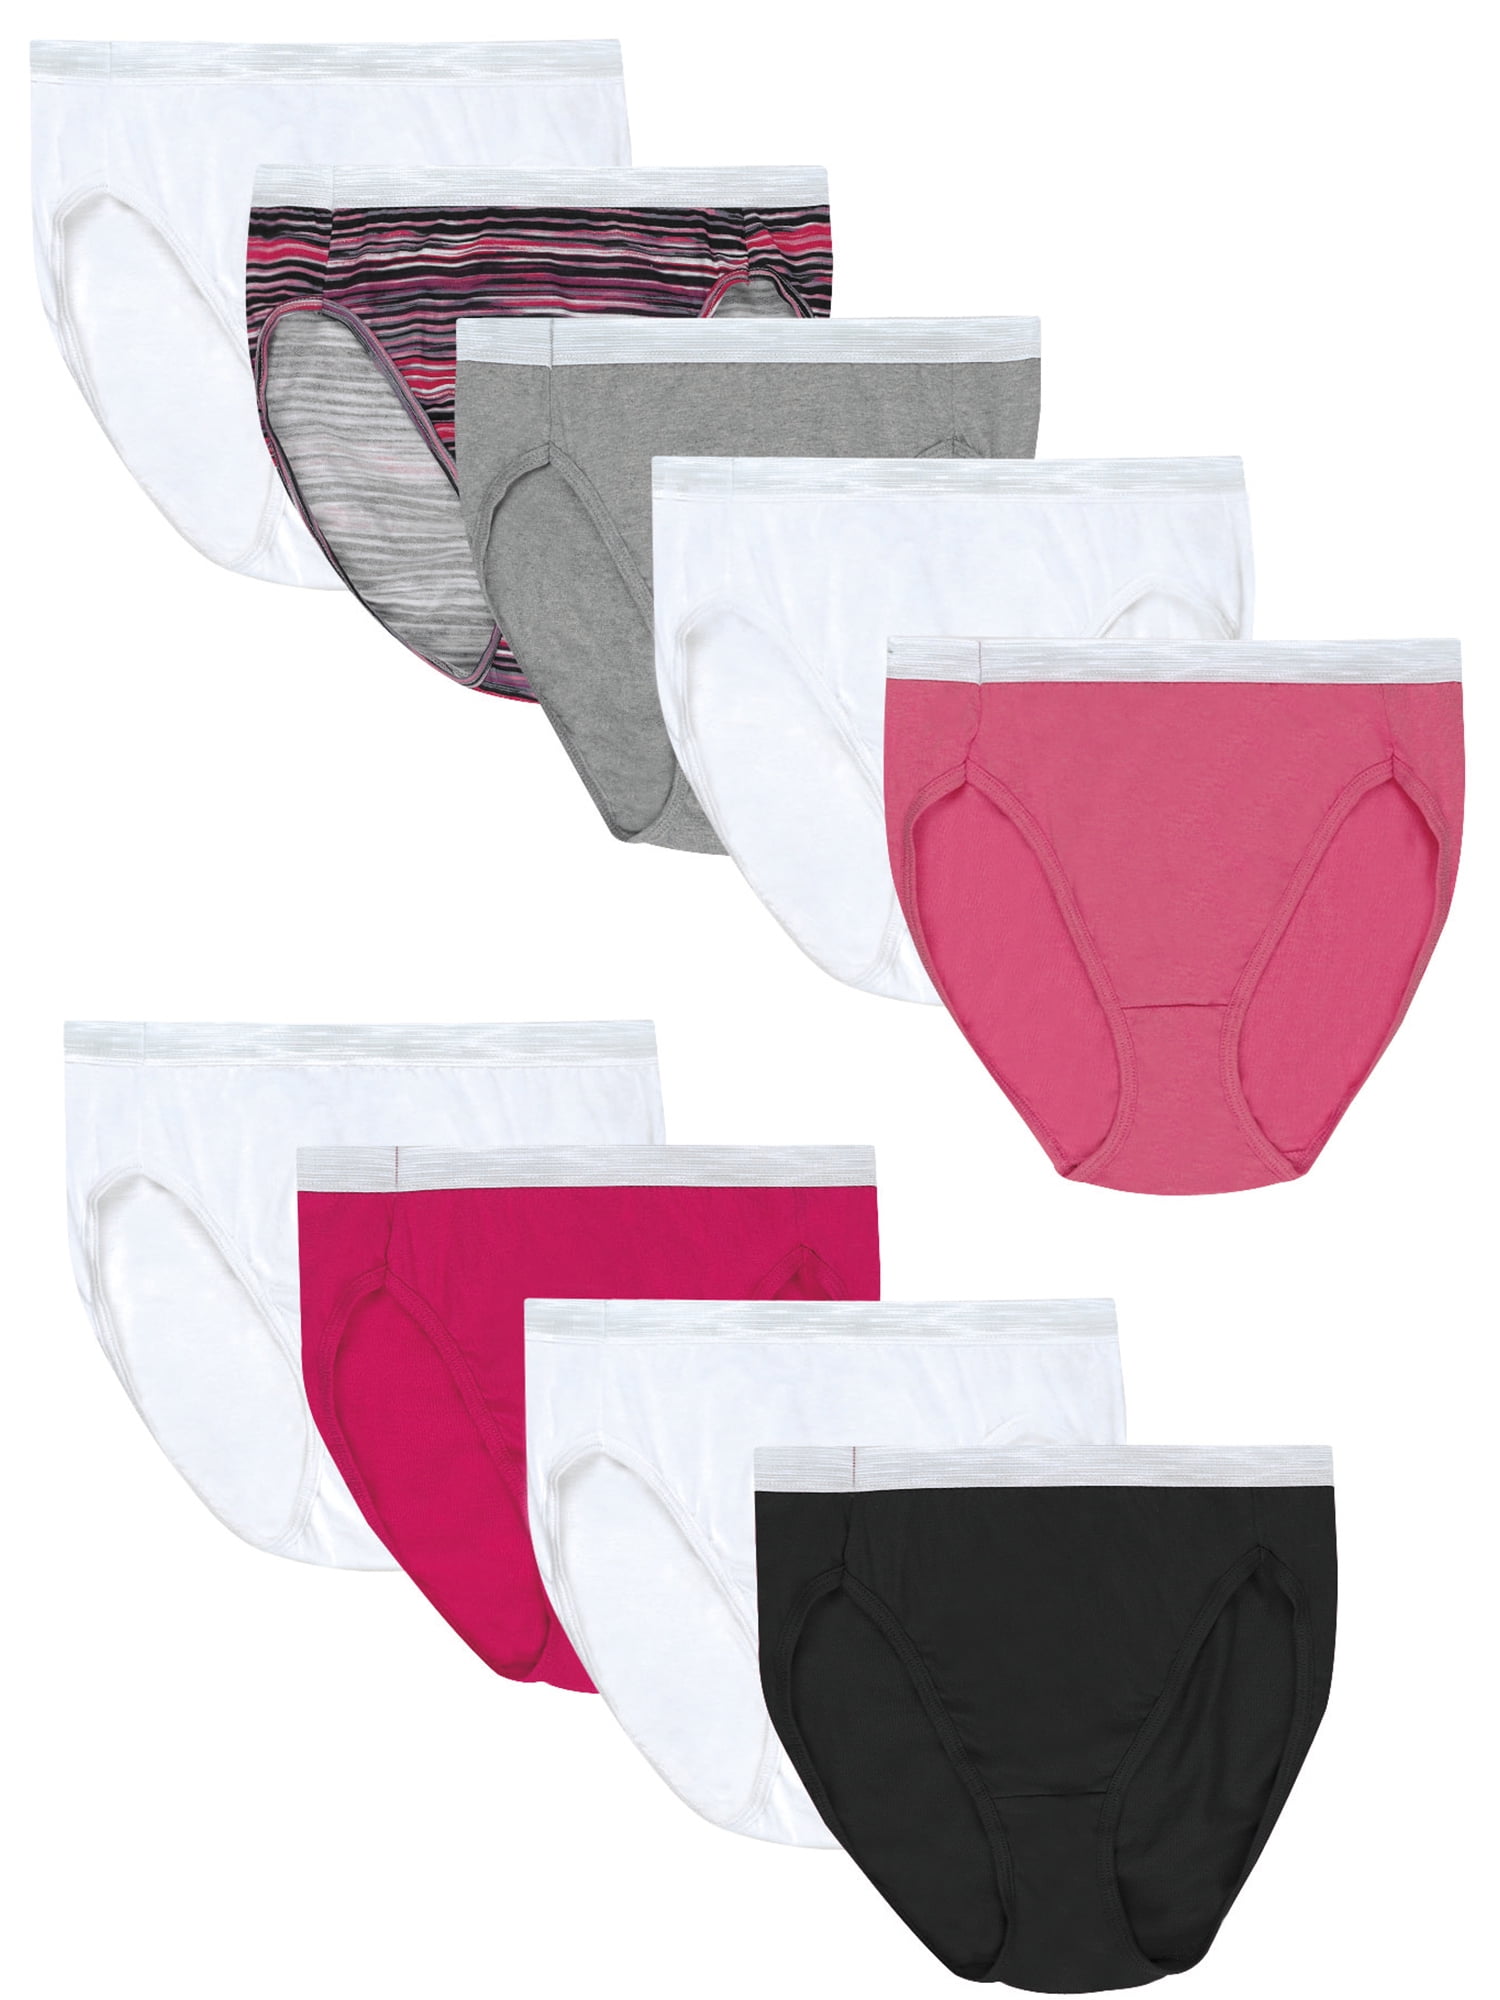 Details about   Hanes Women's Cotton Hi-Cut Panties 8-Pack 6 +2 Free Bonus Pack 